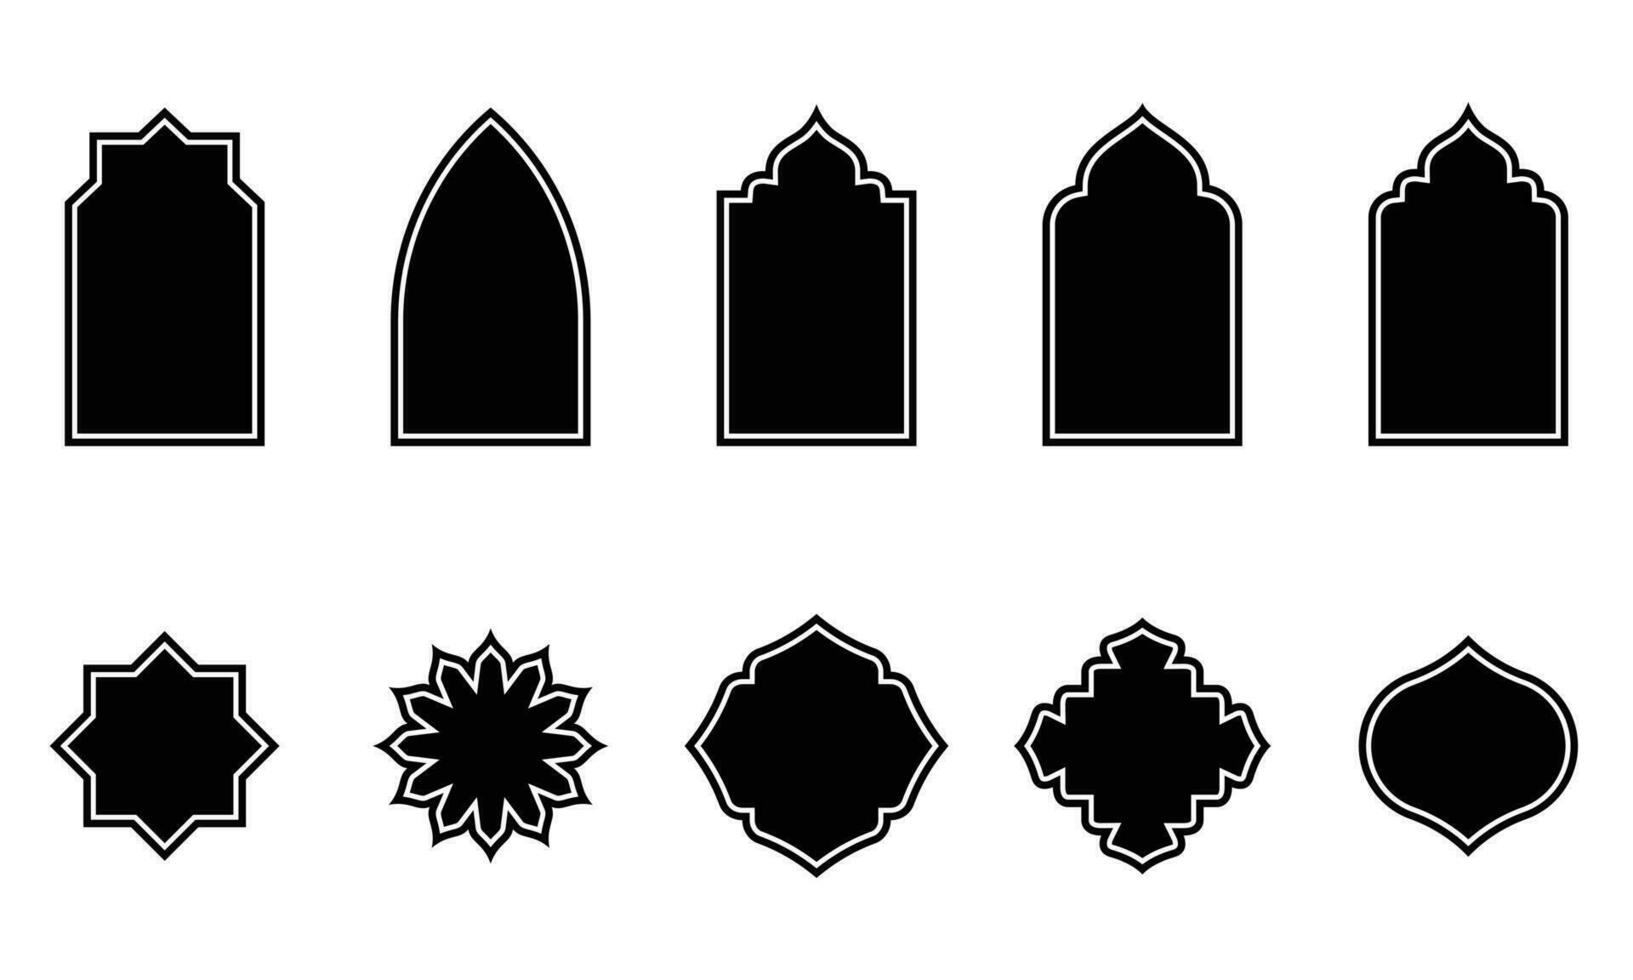 impostato di islamico forma illustrazione. piatto islamico porta e Arabo finestra forma illustrazione. musulmano orientale forme design per Ramadan. bene per islamico disegno, etichetta, cartello, etichetta vettore